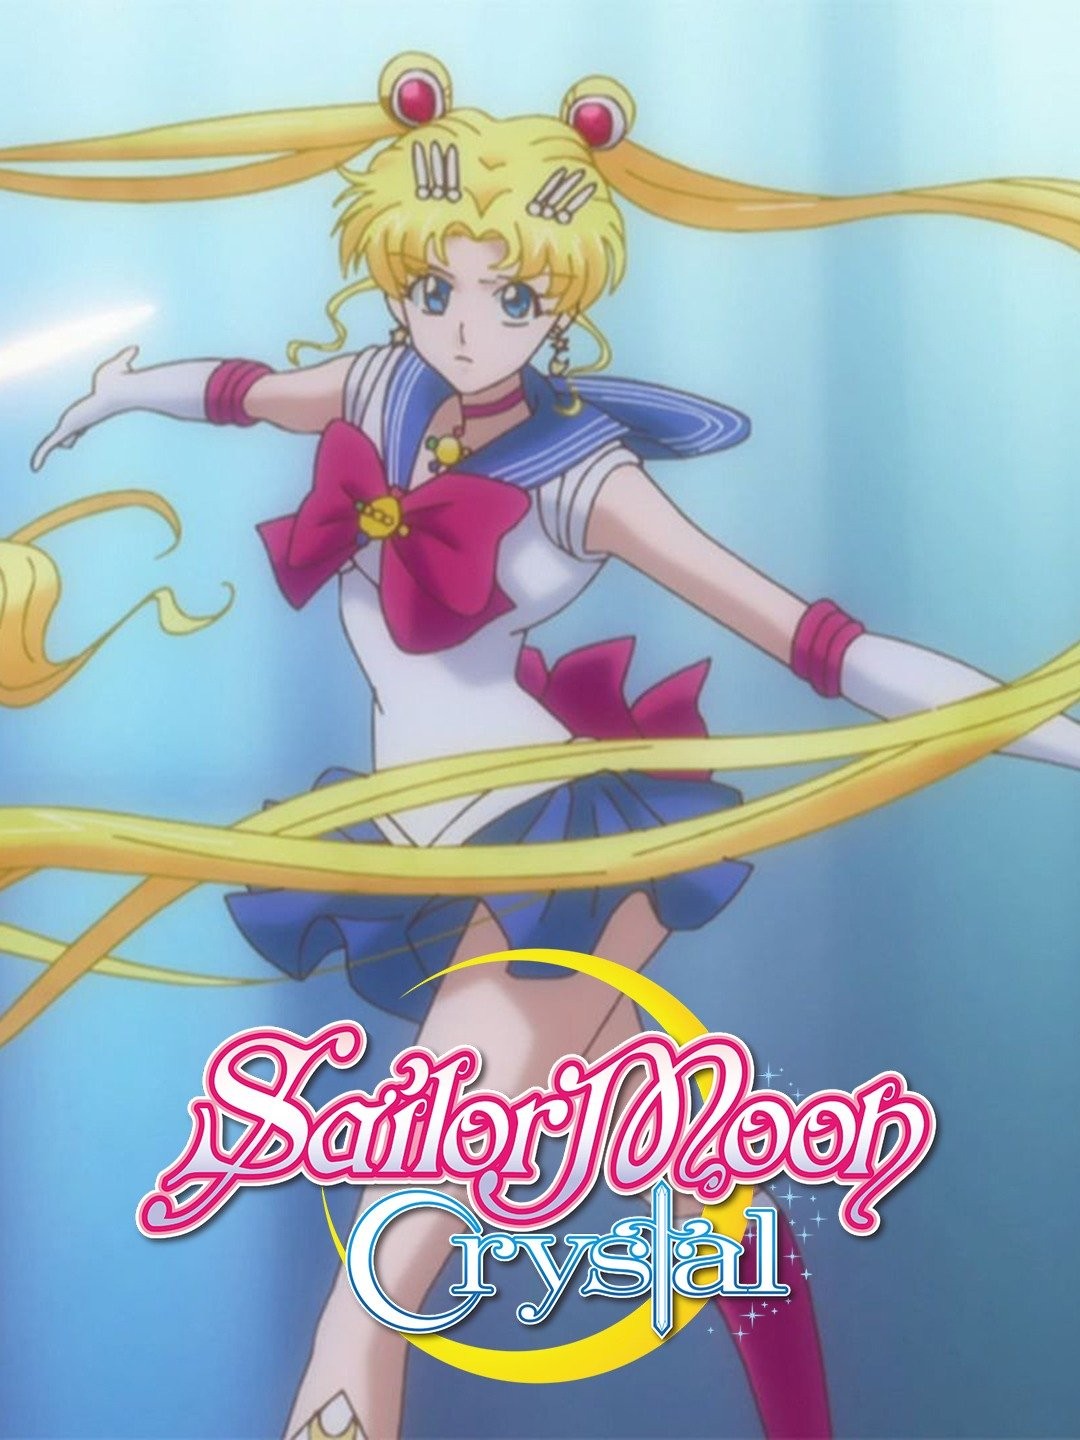 Voce conhece Sailor Moon Crystal